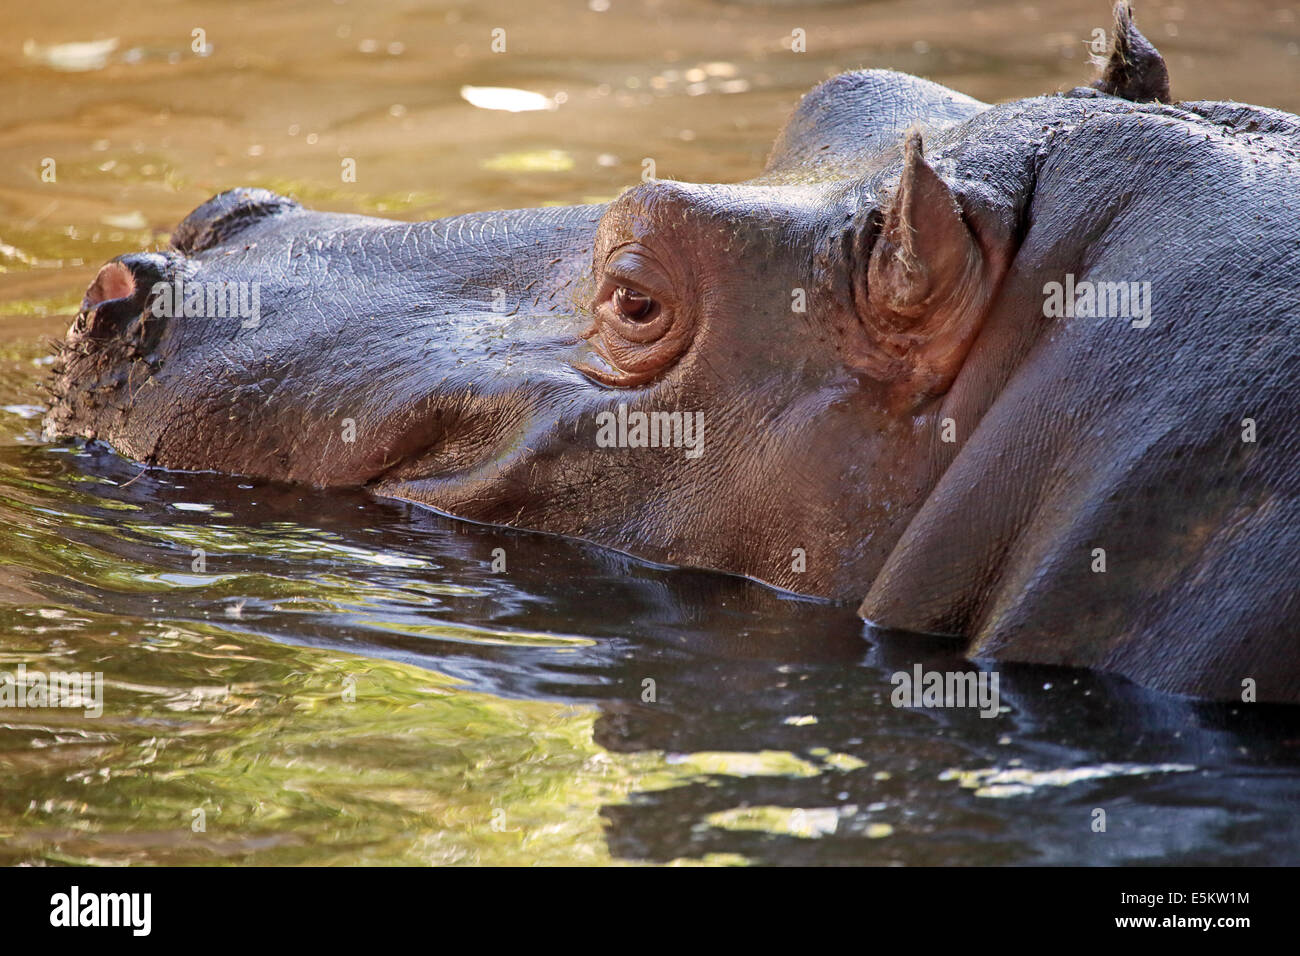 Un Hippopotame (Hippopotamus amphibius) dans l'eau, l'habitat naturel de ce dangereux mammifère herbivore de l'Afrique subsaharienne Banque D'Images